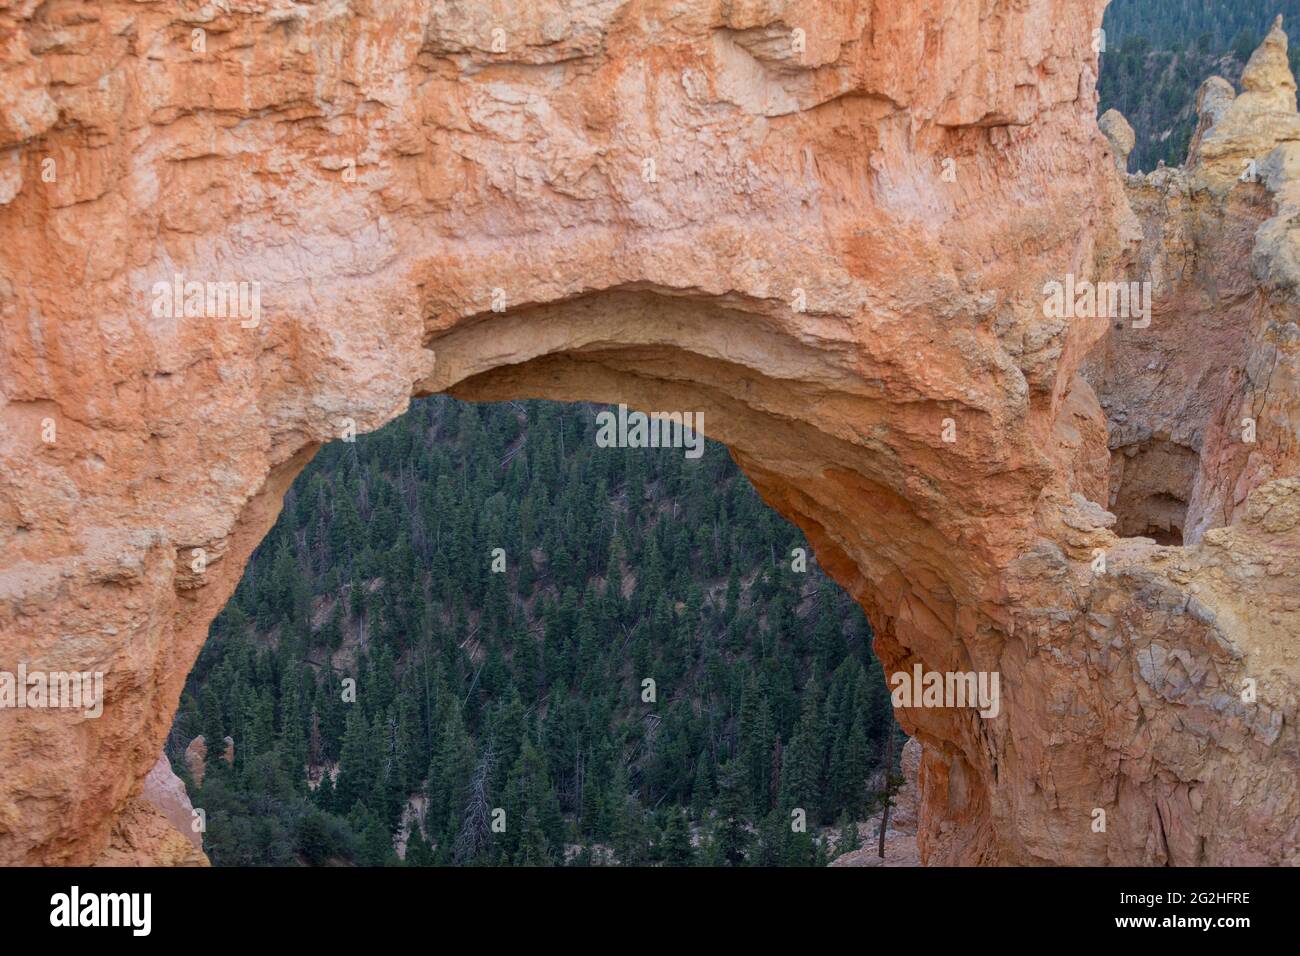 Natural Bridge, ein massiver 85 Fuß großer Rotfelsen-Bogen, der über Millionen von Jahren von geologischen Kräften aus sedimentärem rotem Gestein geschnitzt wurde. Bryce Canyon National Park, Utah, USA Stockfoto